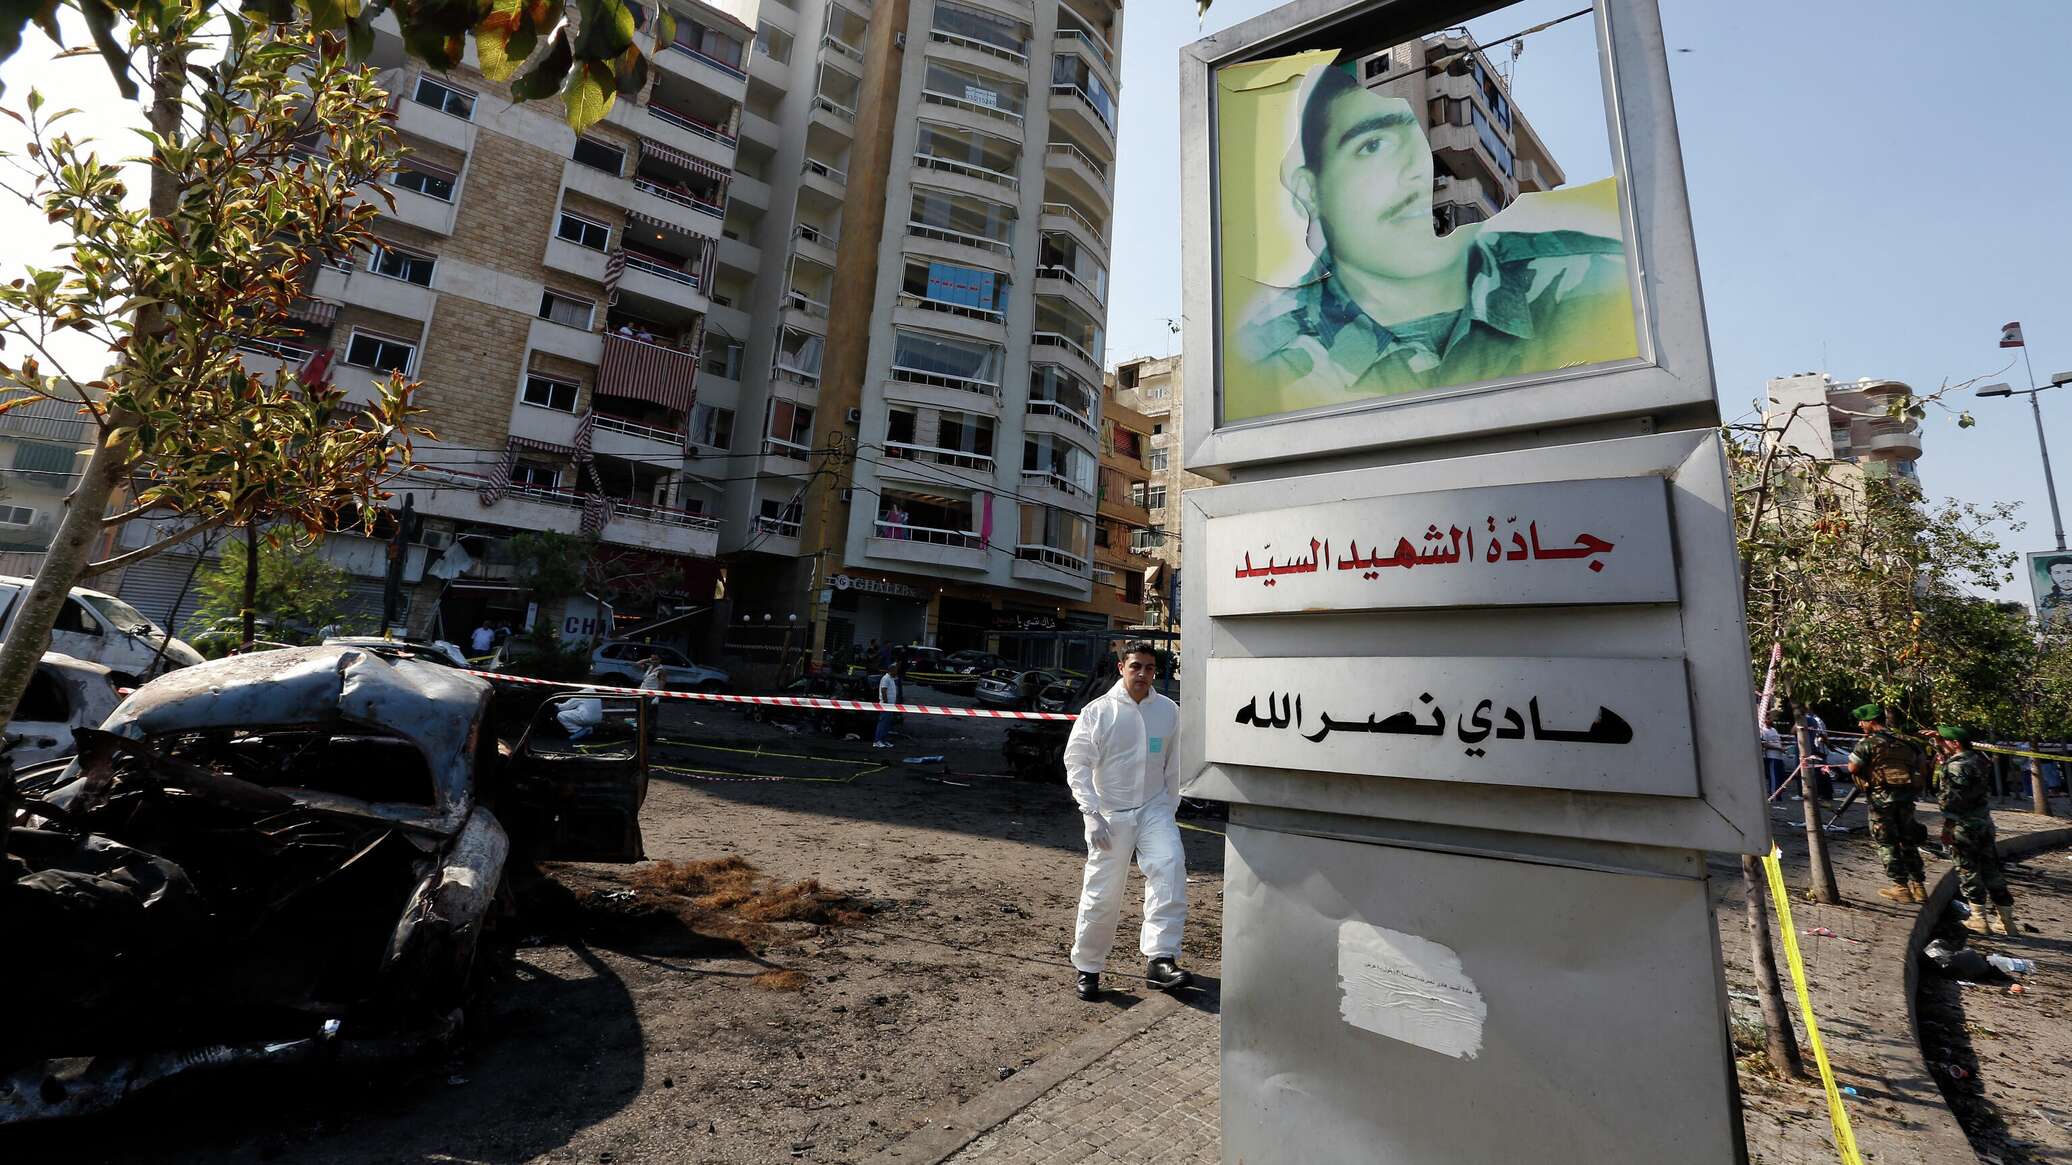 صحيفة تكشف عن تحركات أمنية لـ"حزب الله" في بيروت ورفع حالة الجهوزية